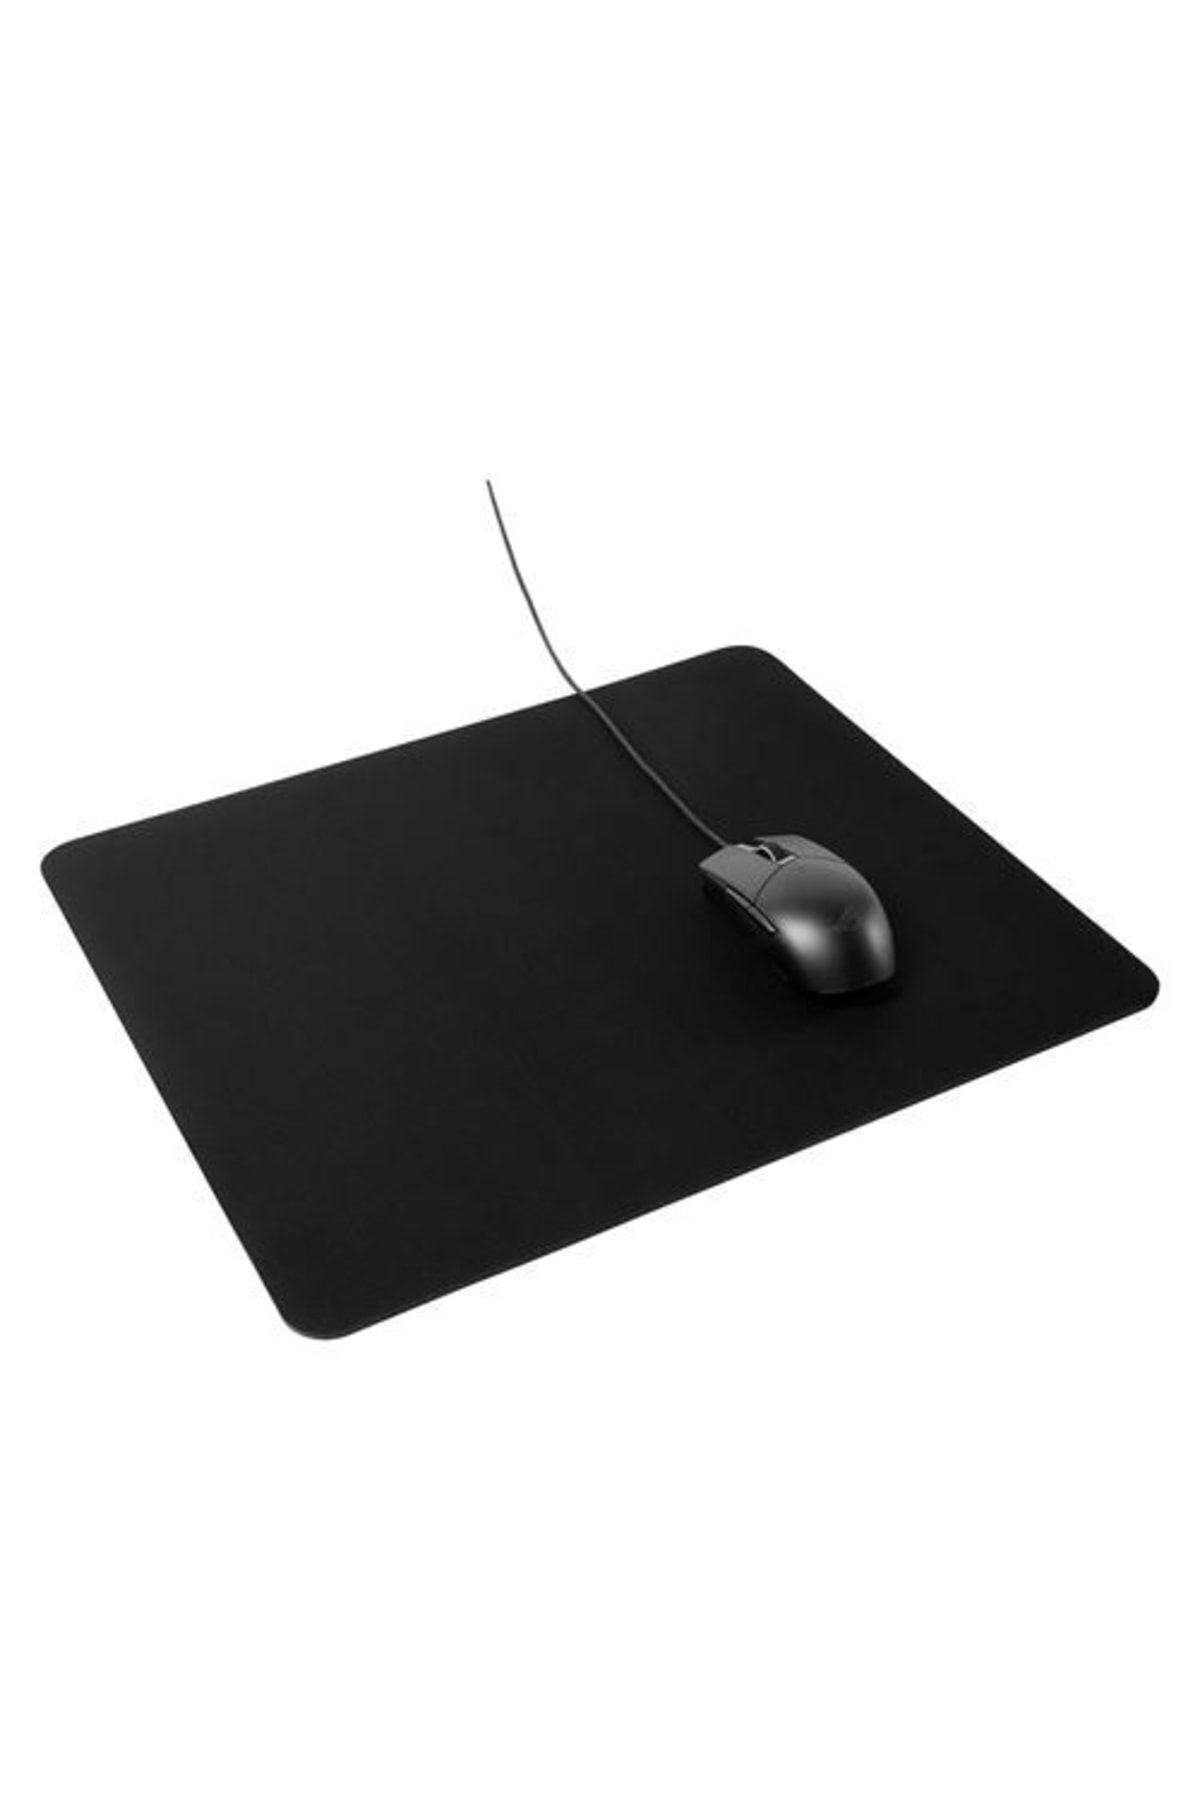 IKEA Siyah Lanespelare Oyun Mouse Pedi, Siyah 2 Yıl Resmi Distribütör Garantili Yok Oyun